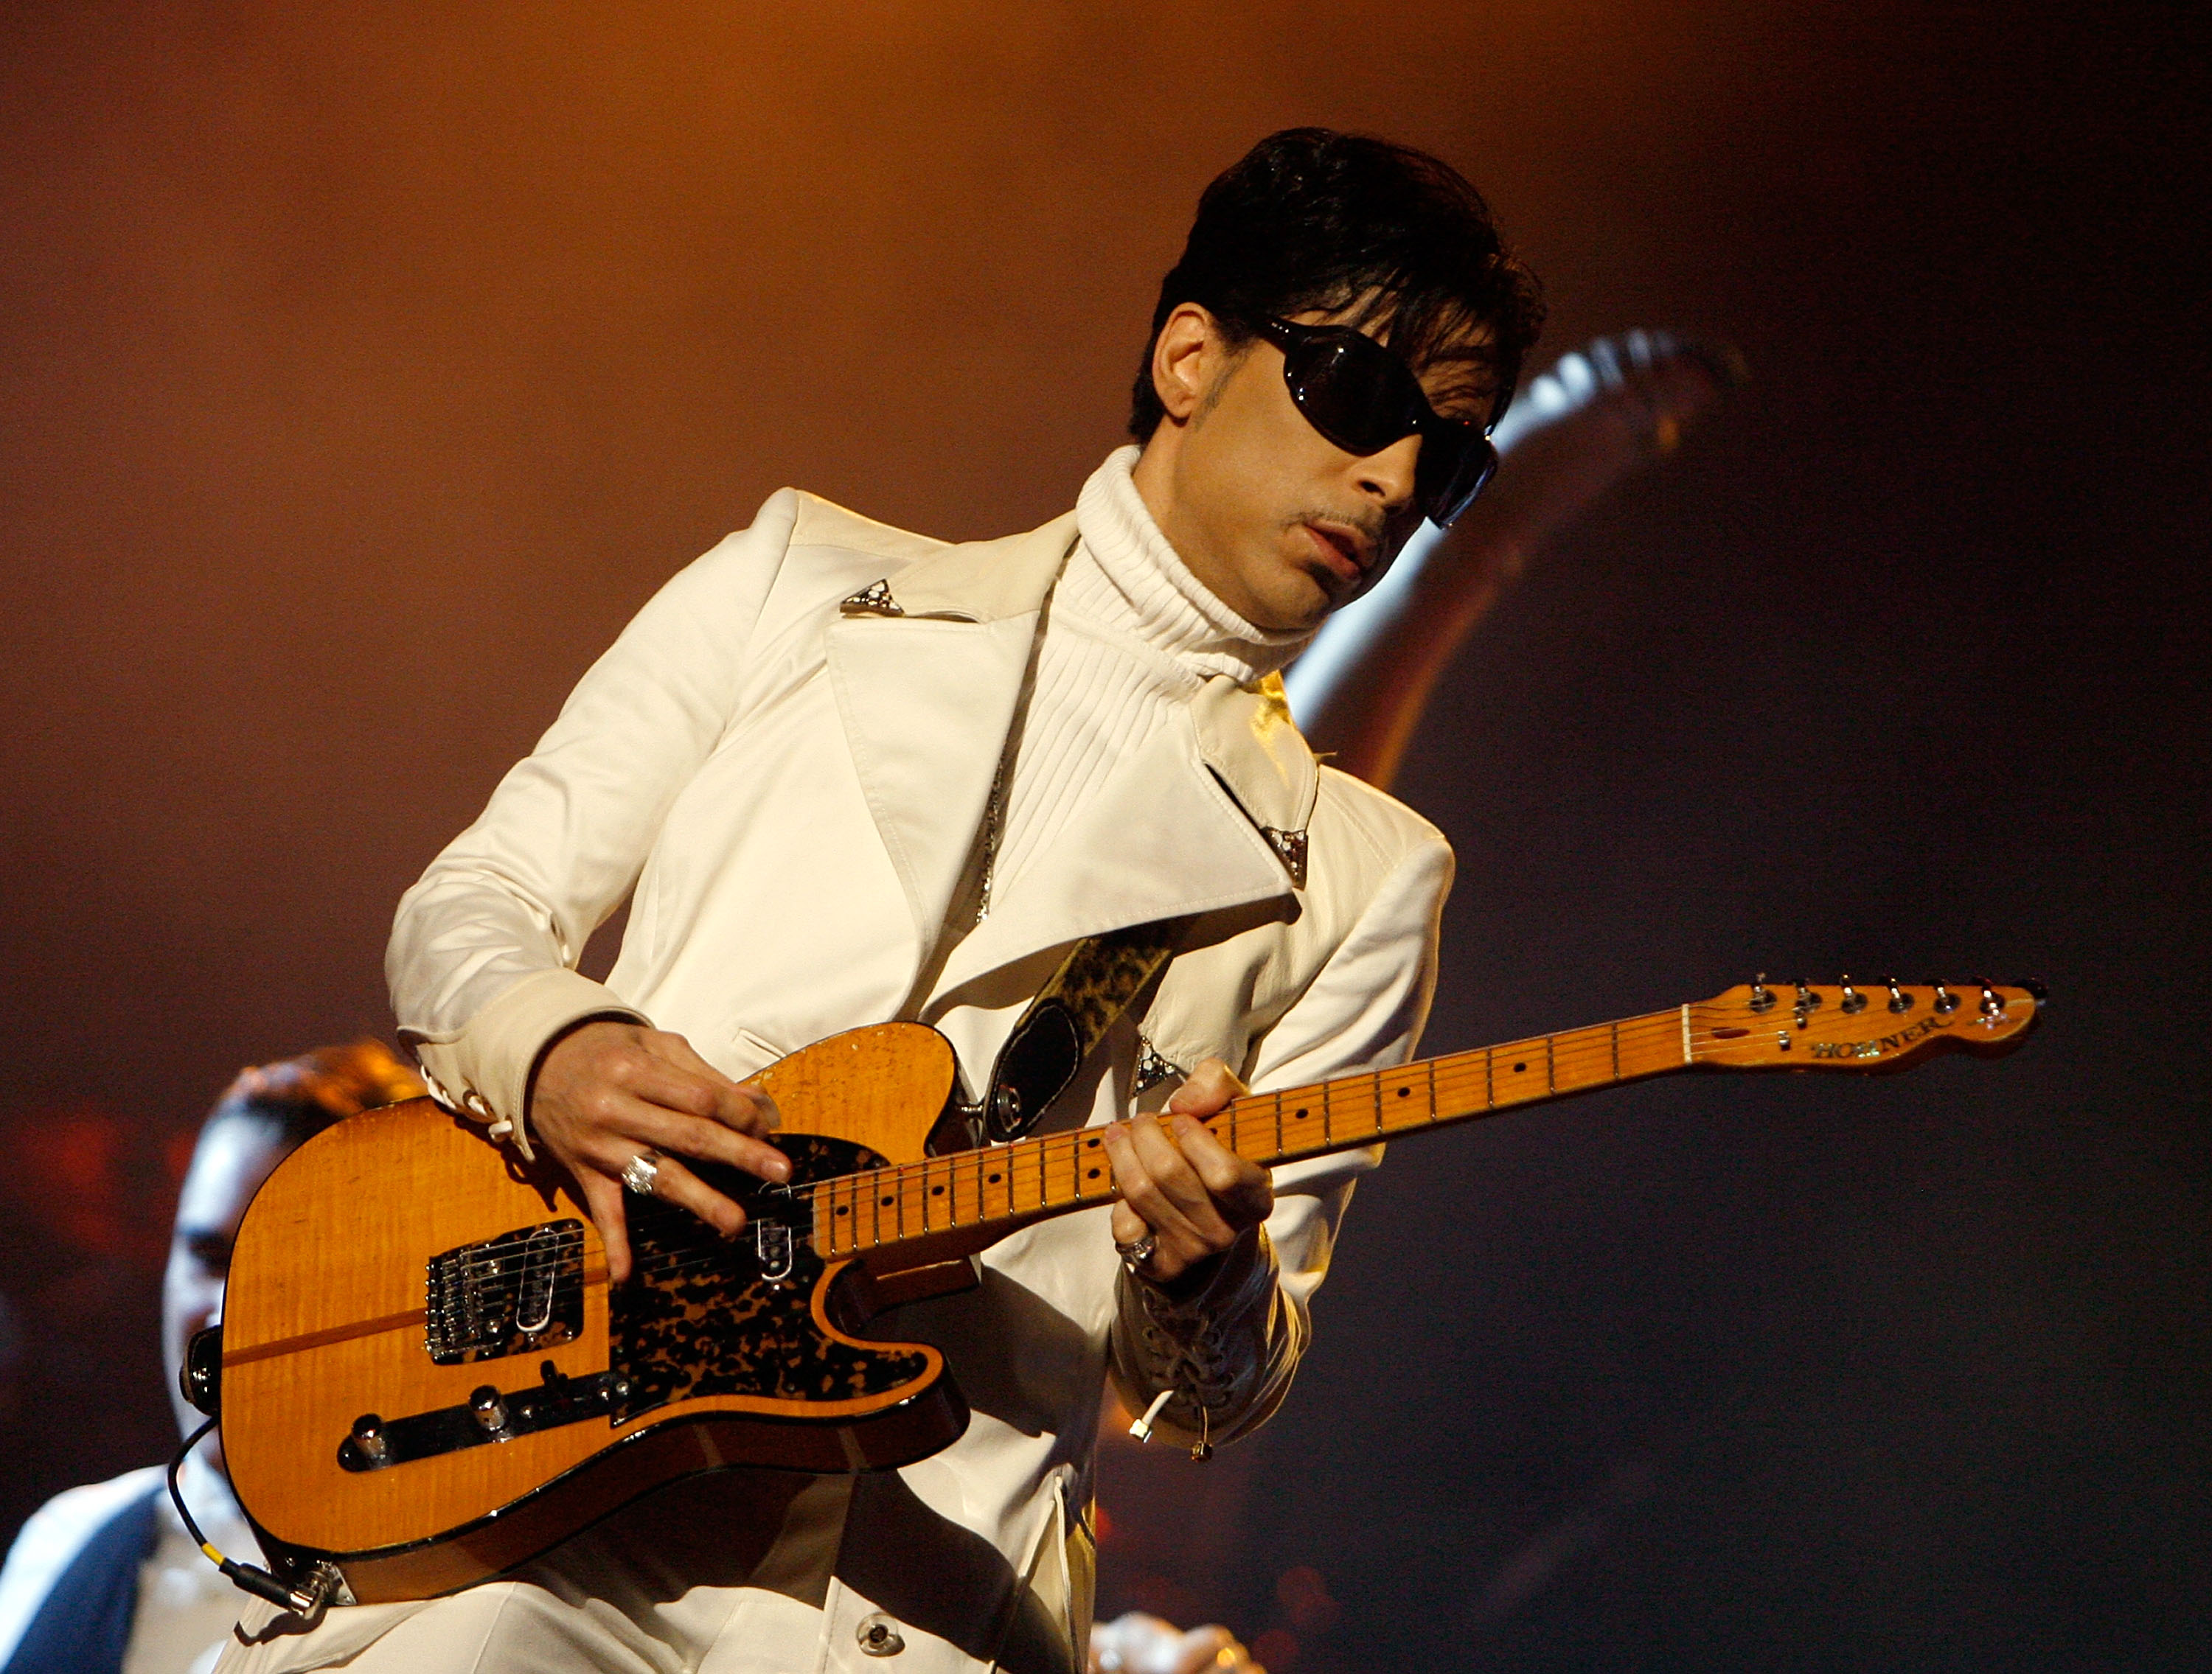 Prince wearing white